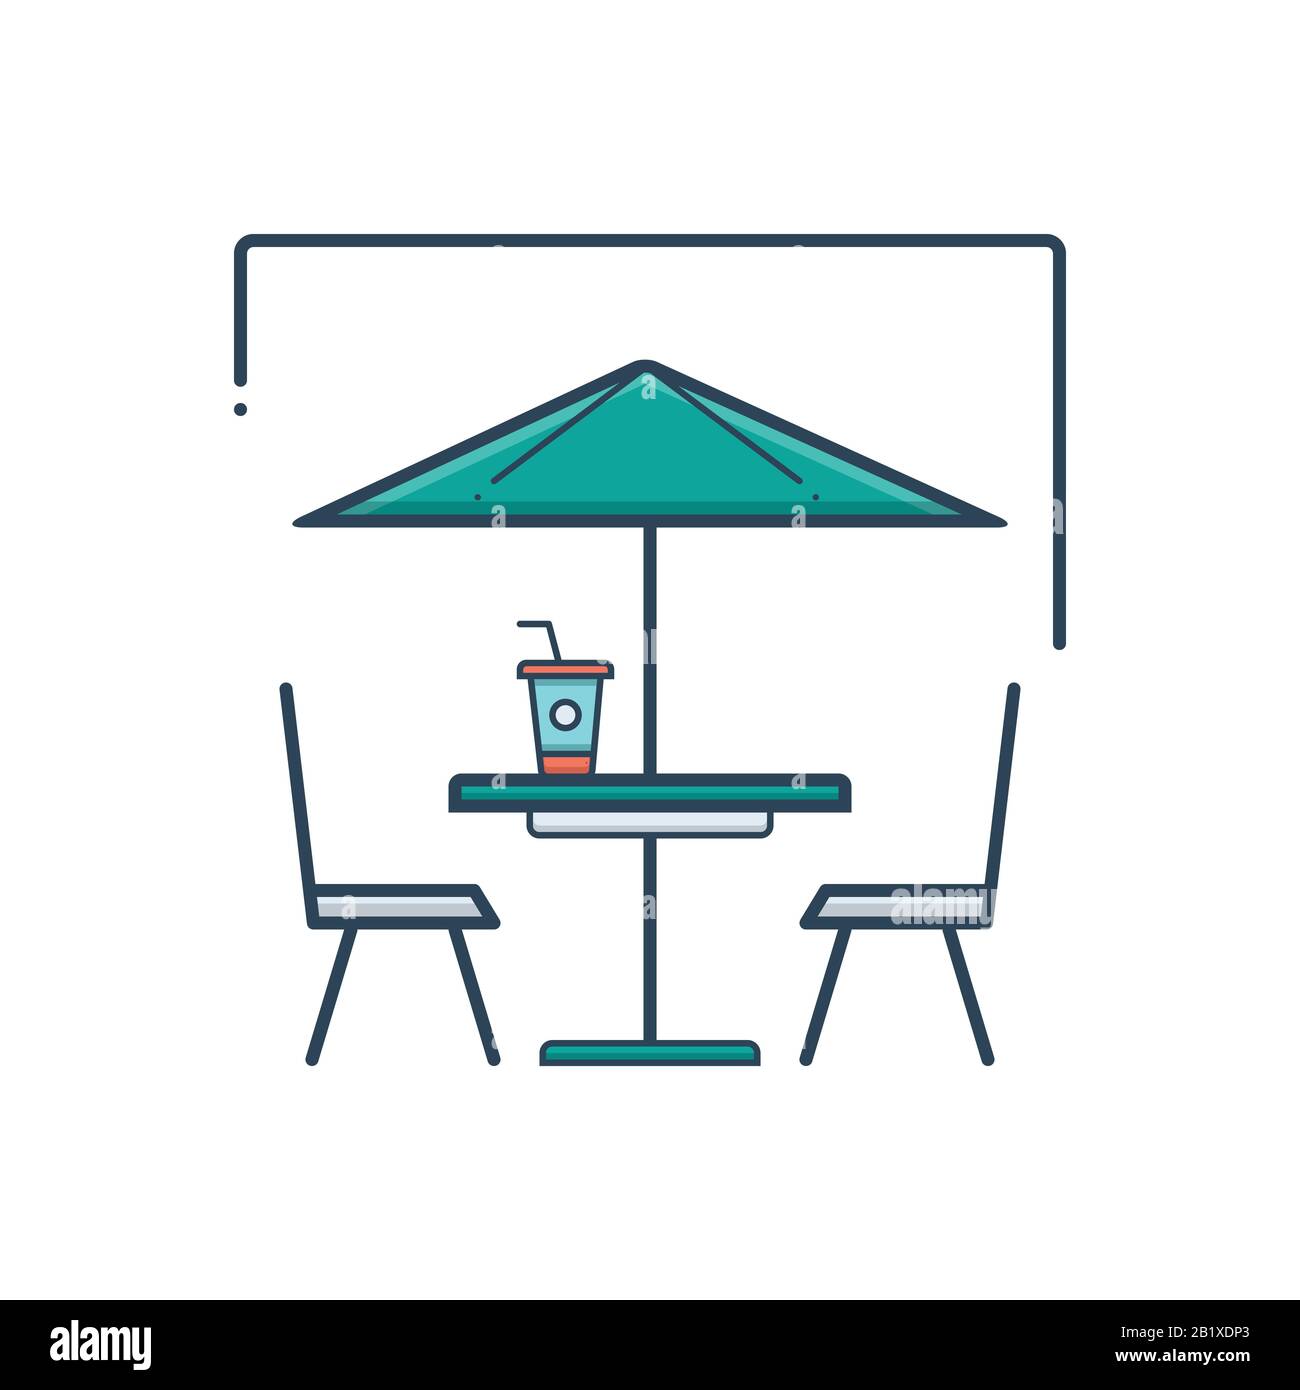 Outdoor cafe icon Stock Vector